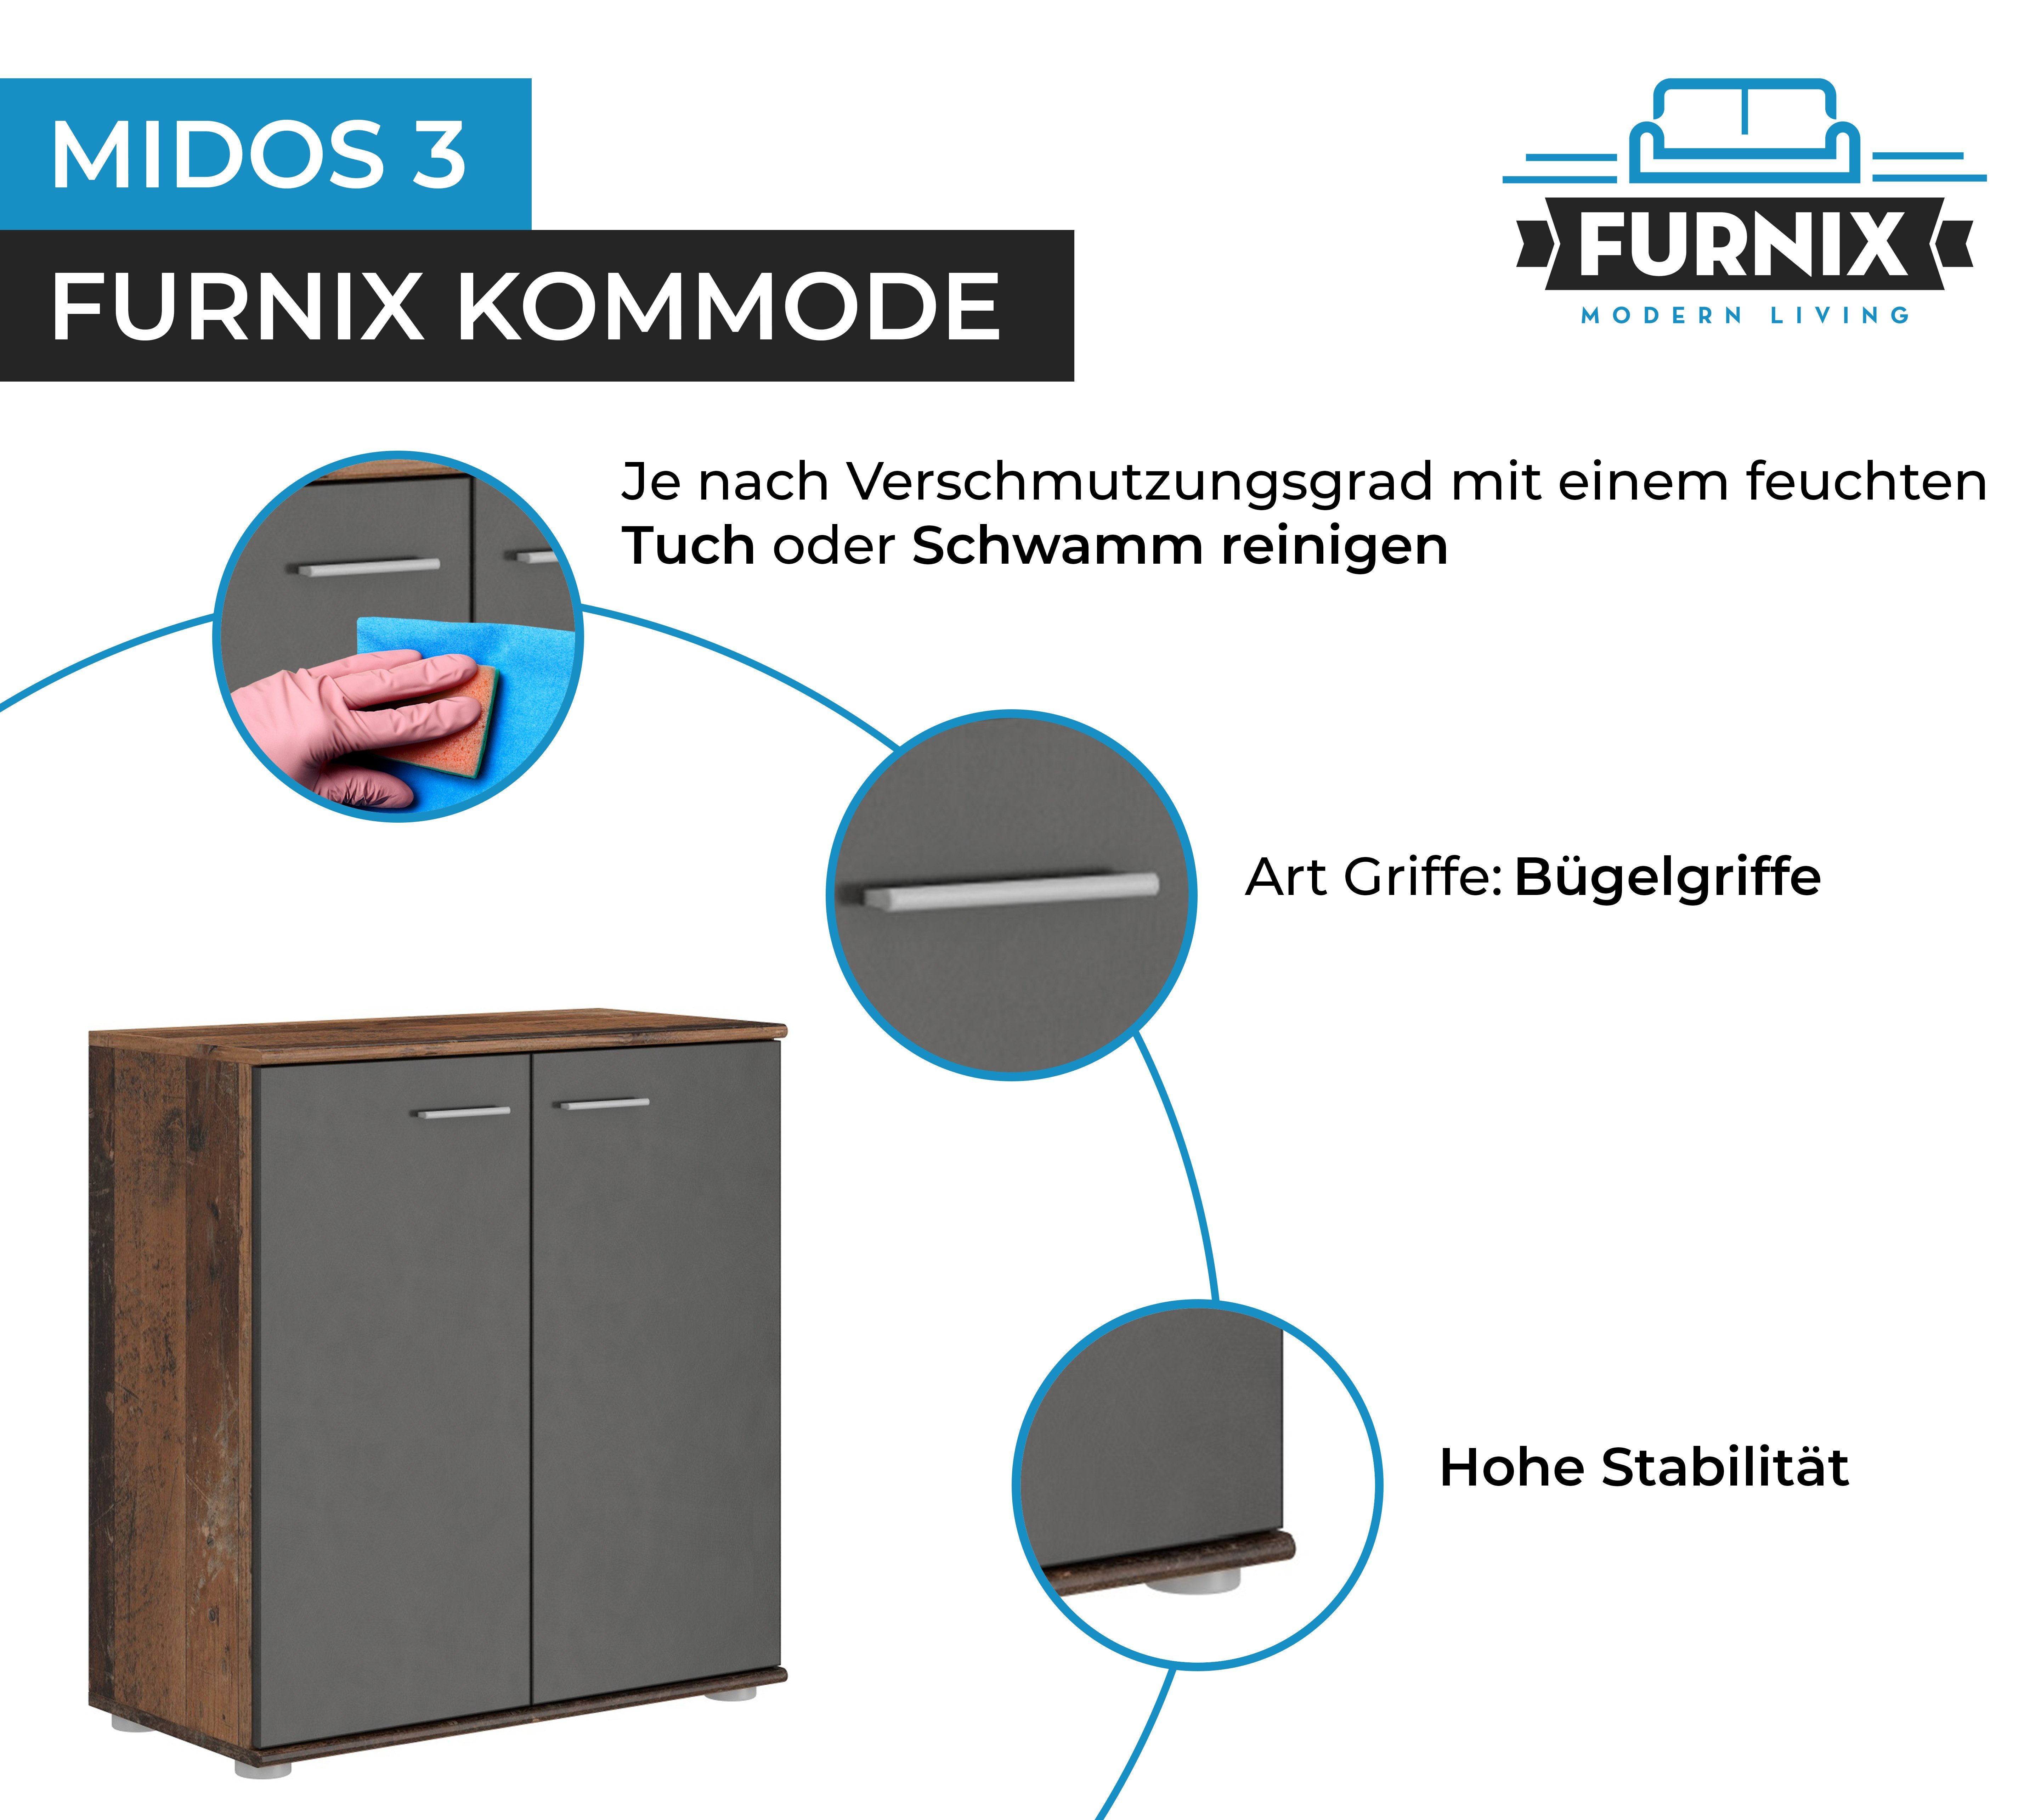 3 Türen Sideboard 2 fürs Kommode modern Furnix oldwood Midos Wohnzimmer mit